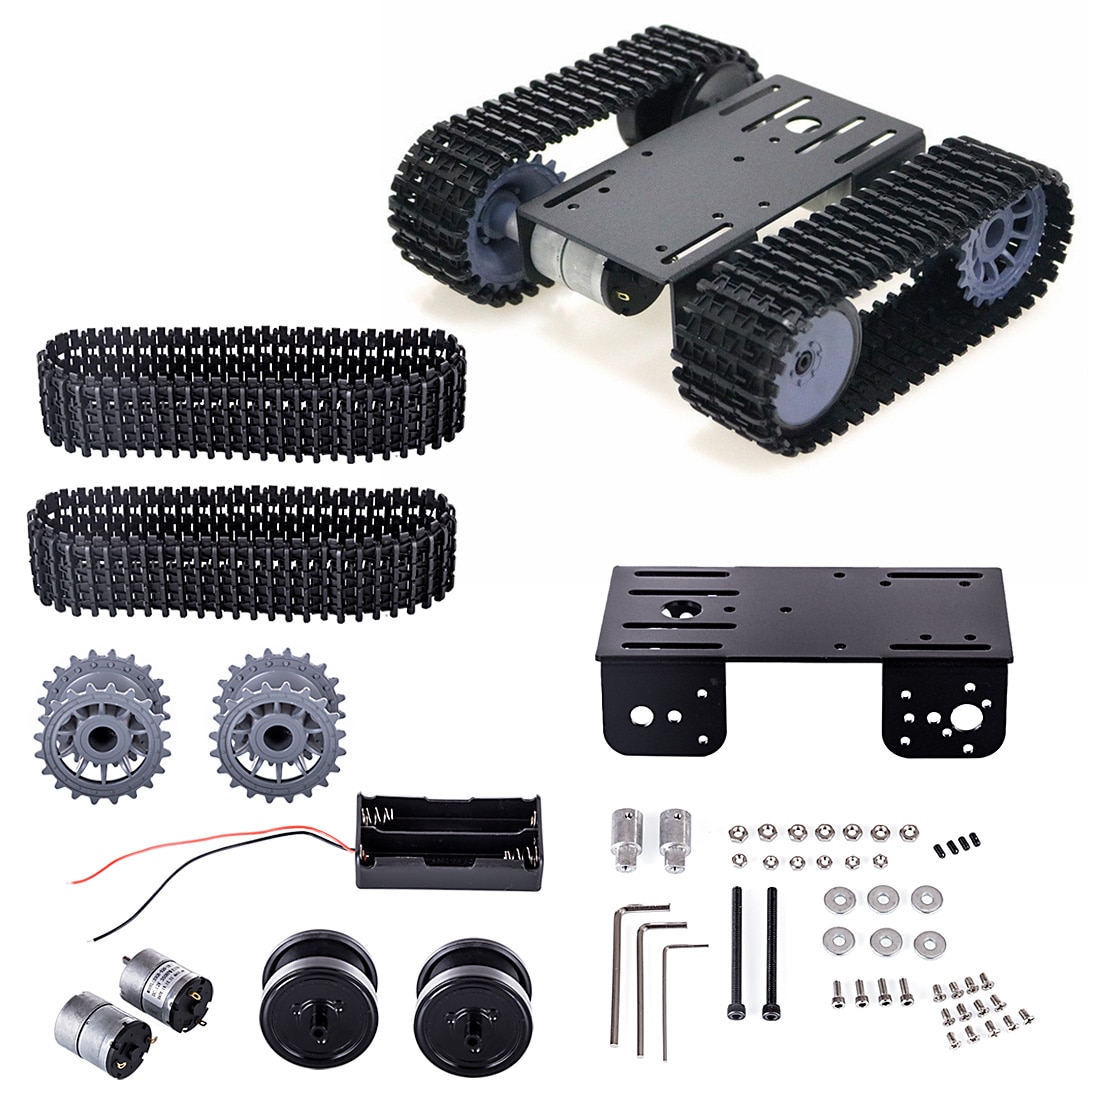 Tp101- sporet robot smart bil platform diy metal robot tank crawler chassis platform kit til arduino - sort / blå / hvid: 3